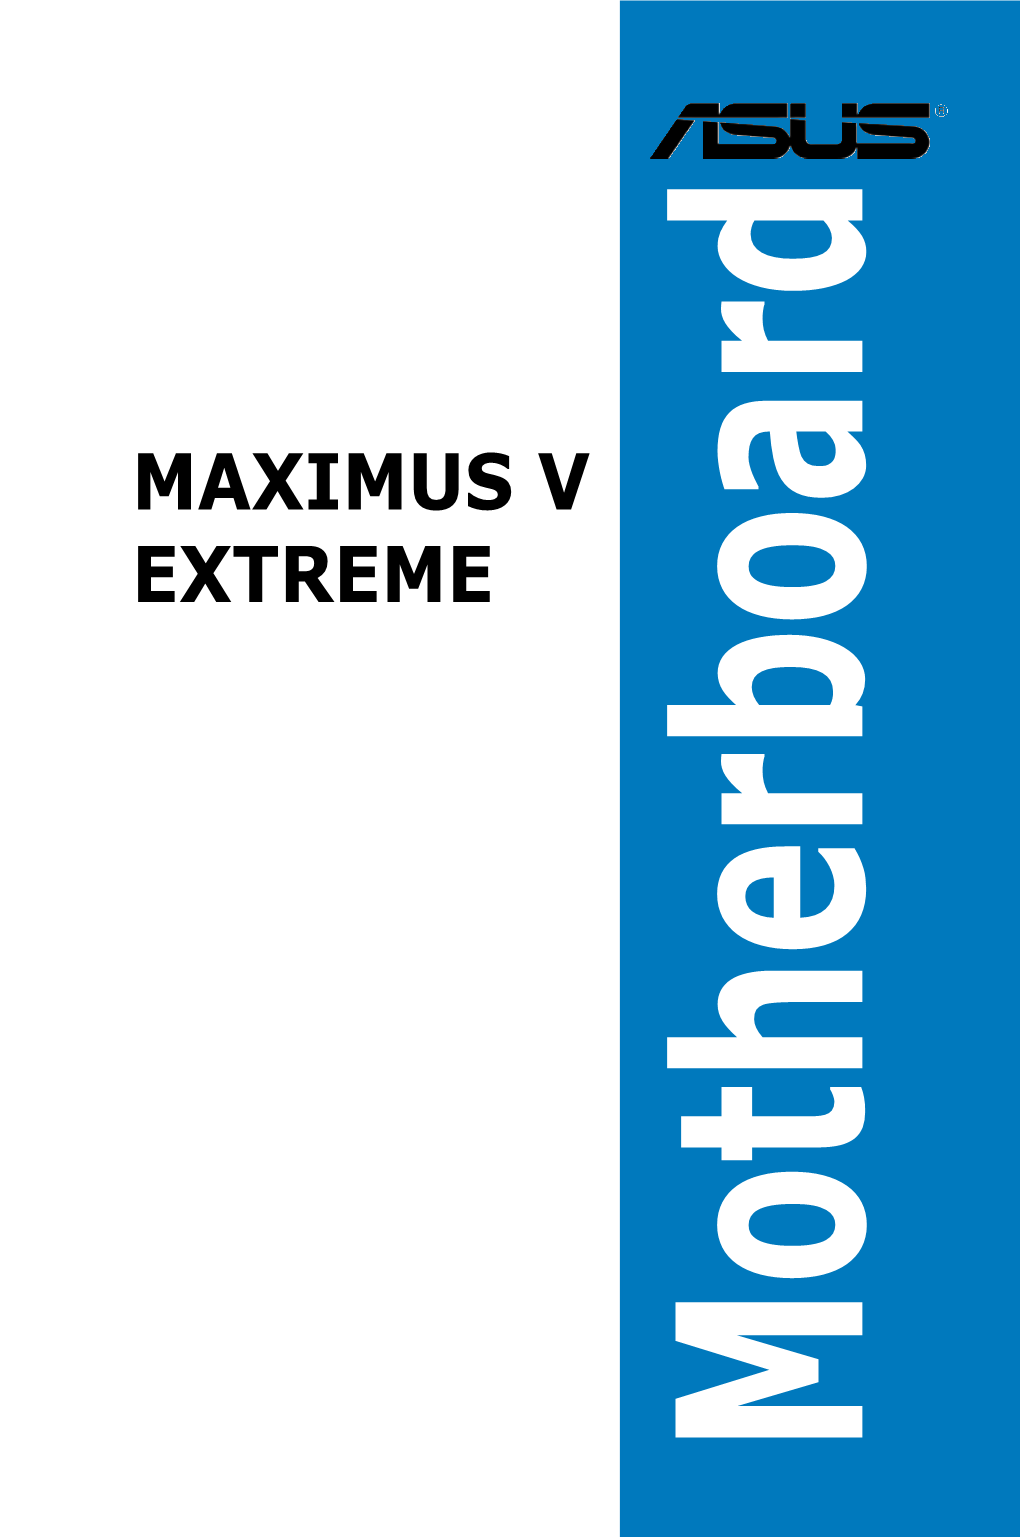 MAXIMUS V EXTREME Specifications Summary